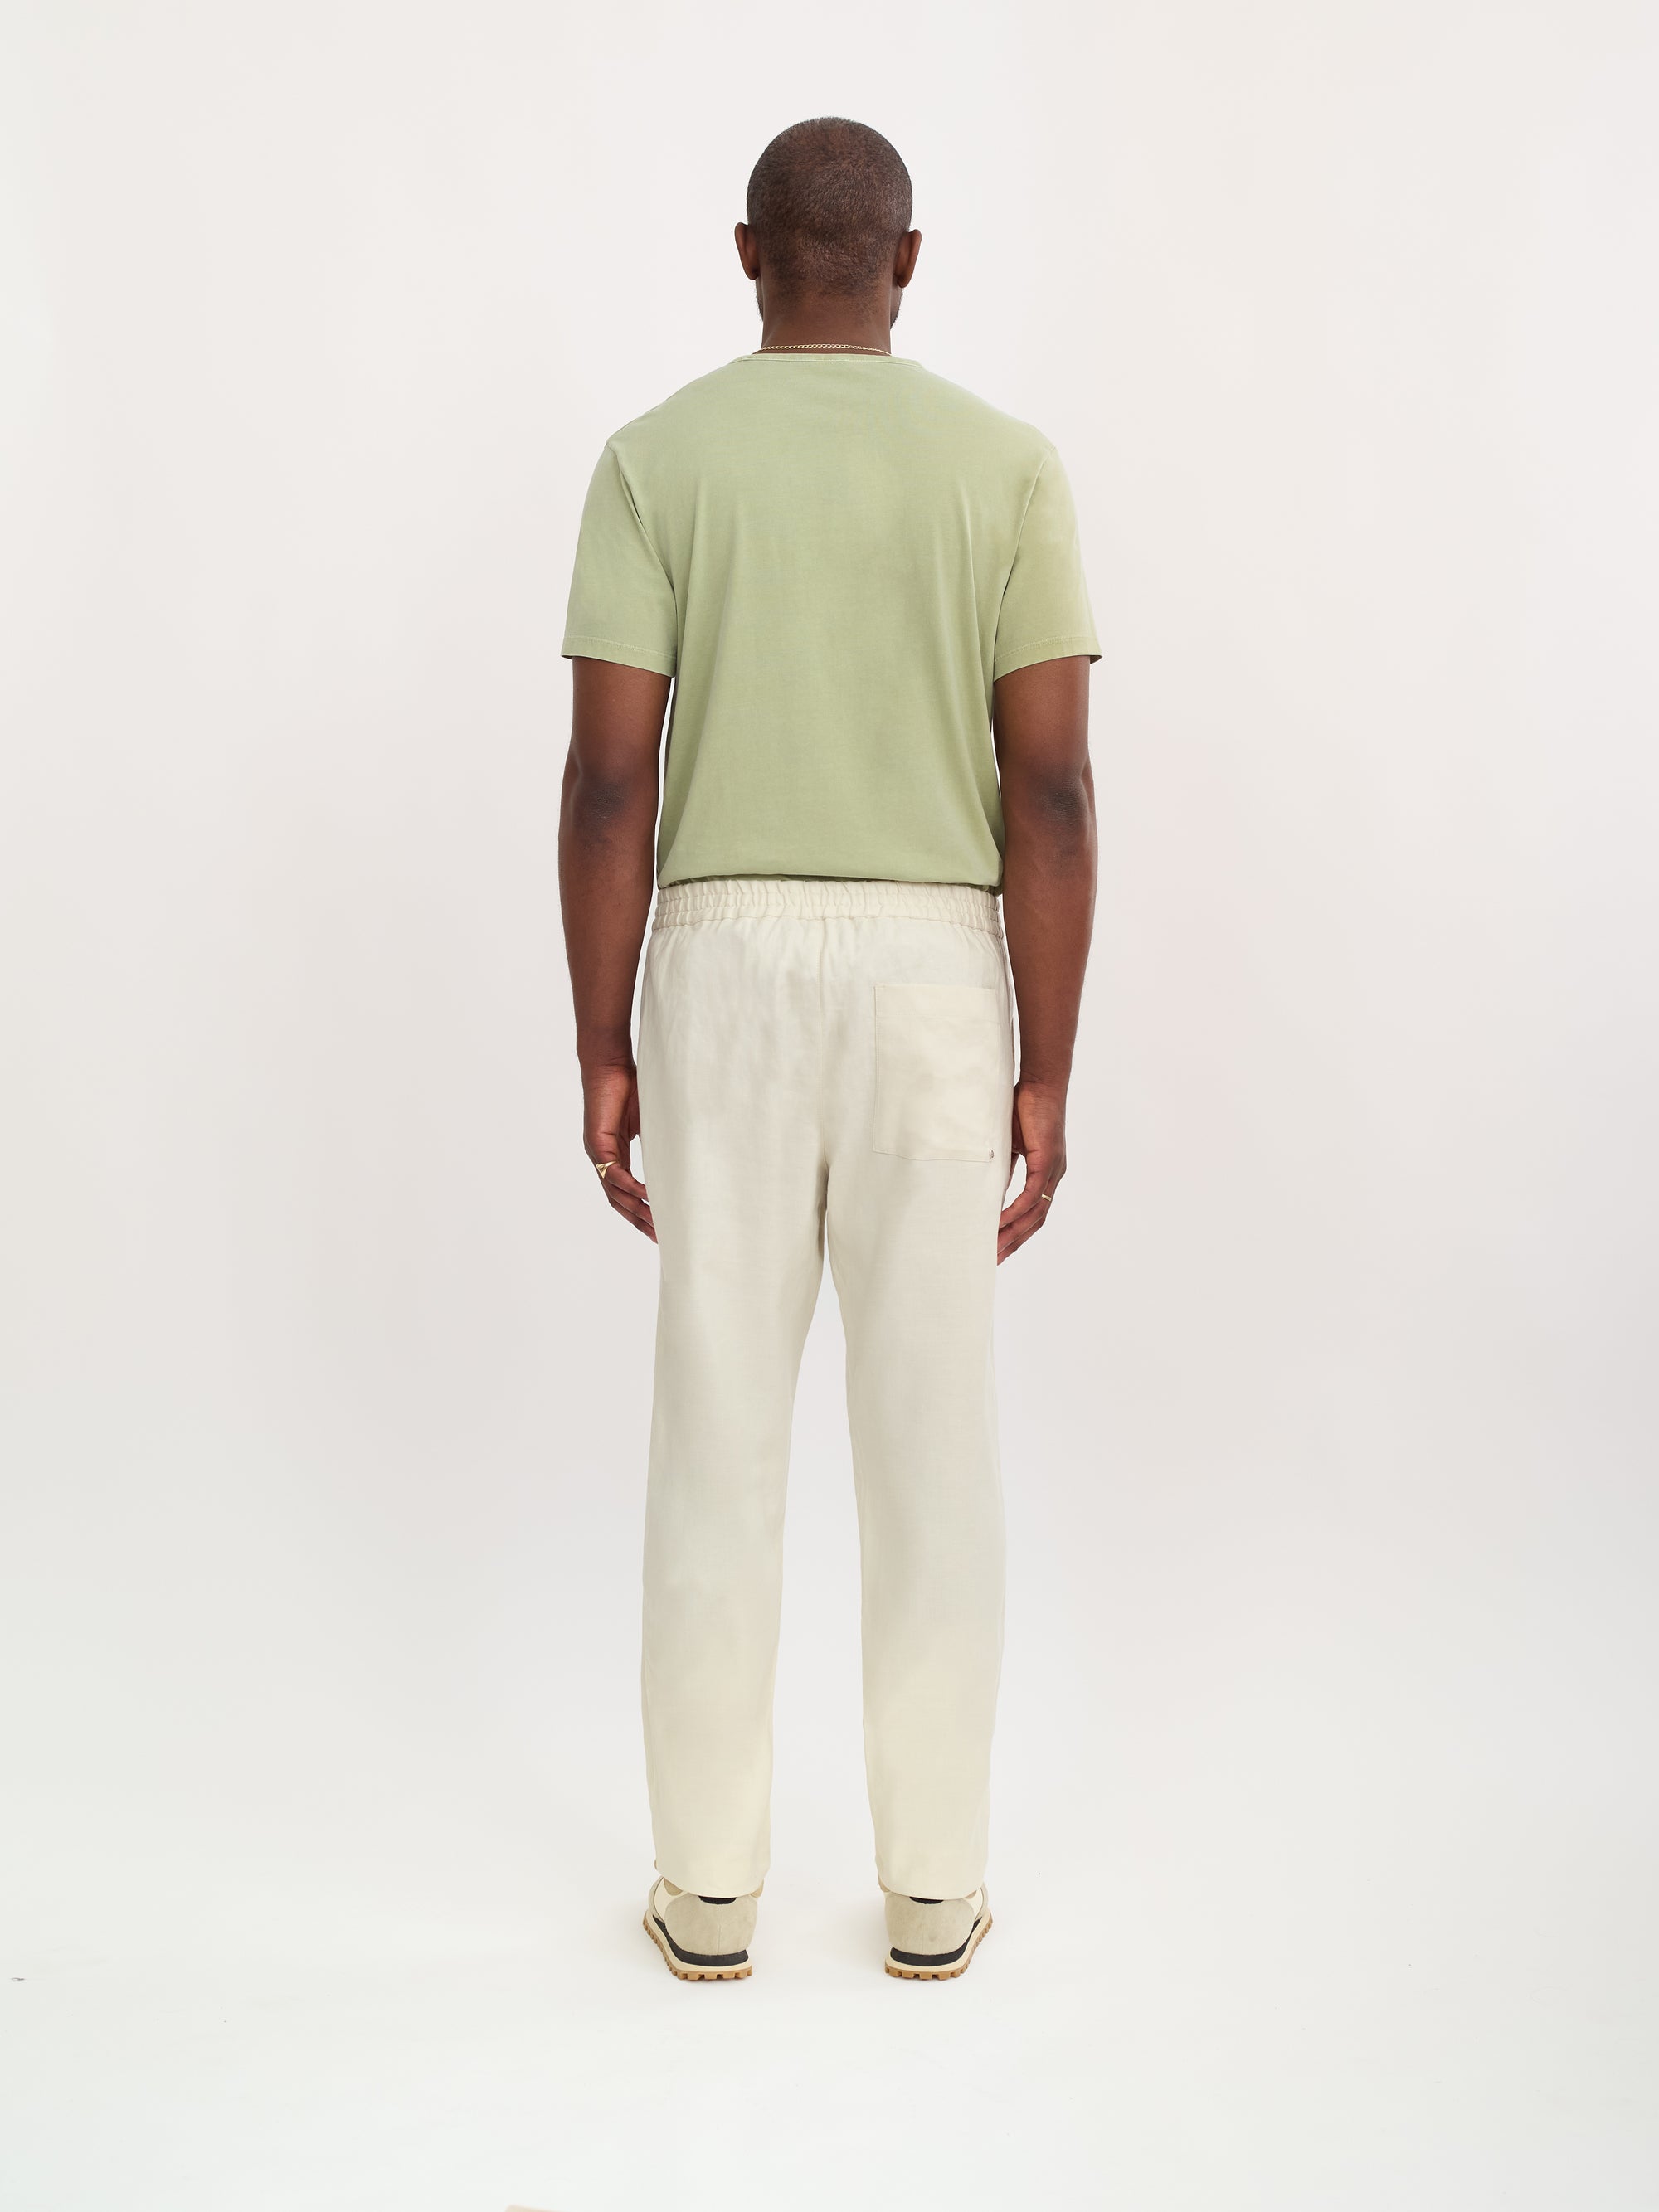 The Easy Trouser || Ivory | Linen